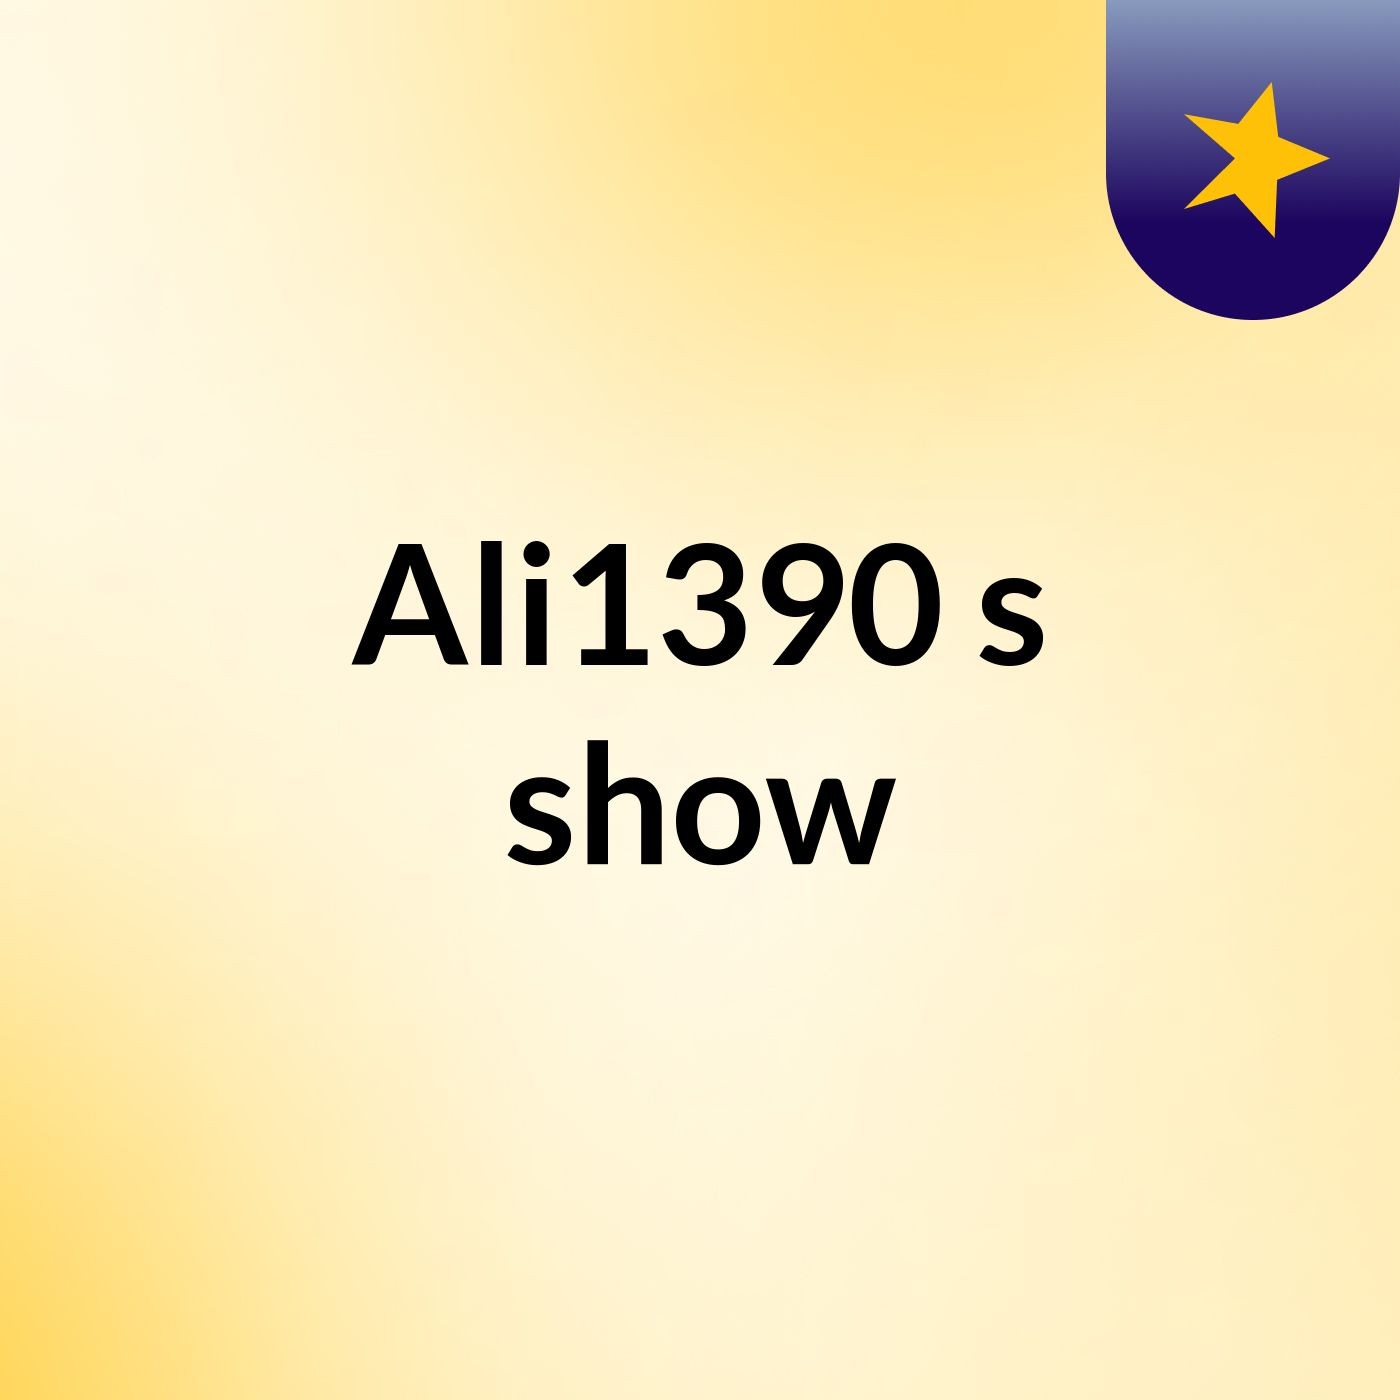 Ali1390's show